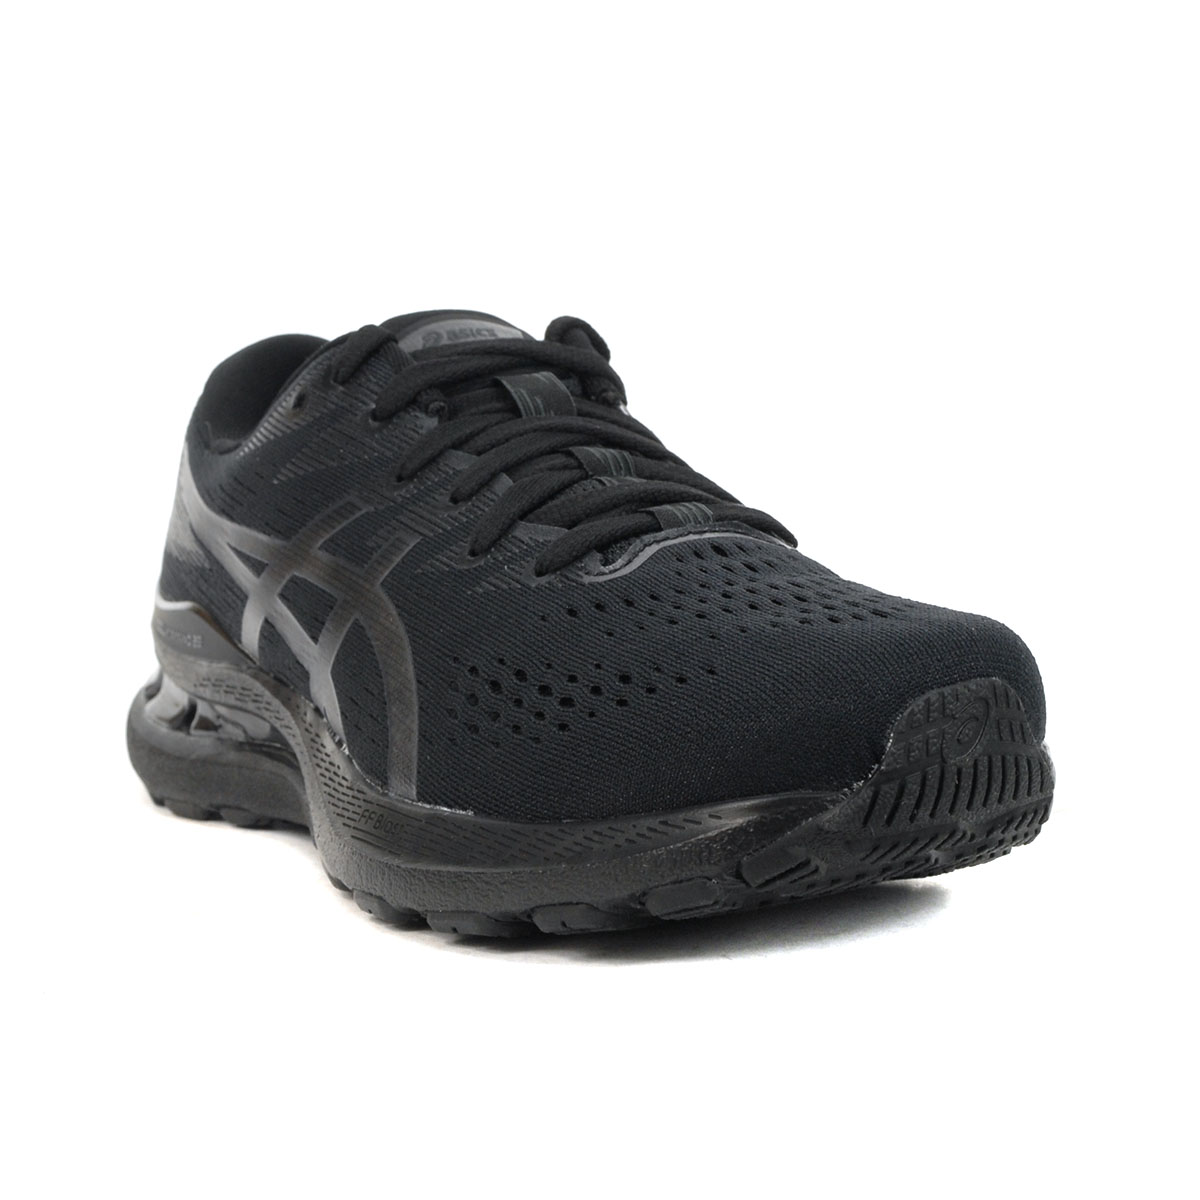 ASICS Men's Gel-Kayano 28 Black/Graphite Grey Running Shoes 1011B189 ...